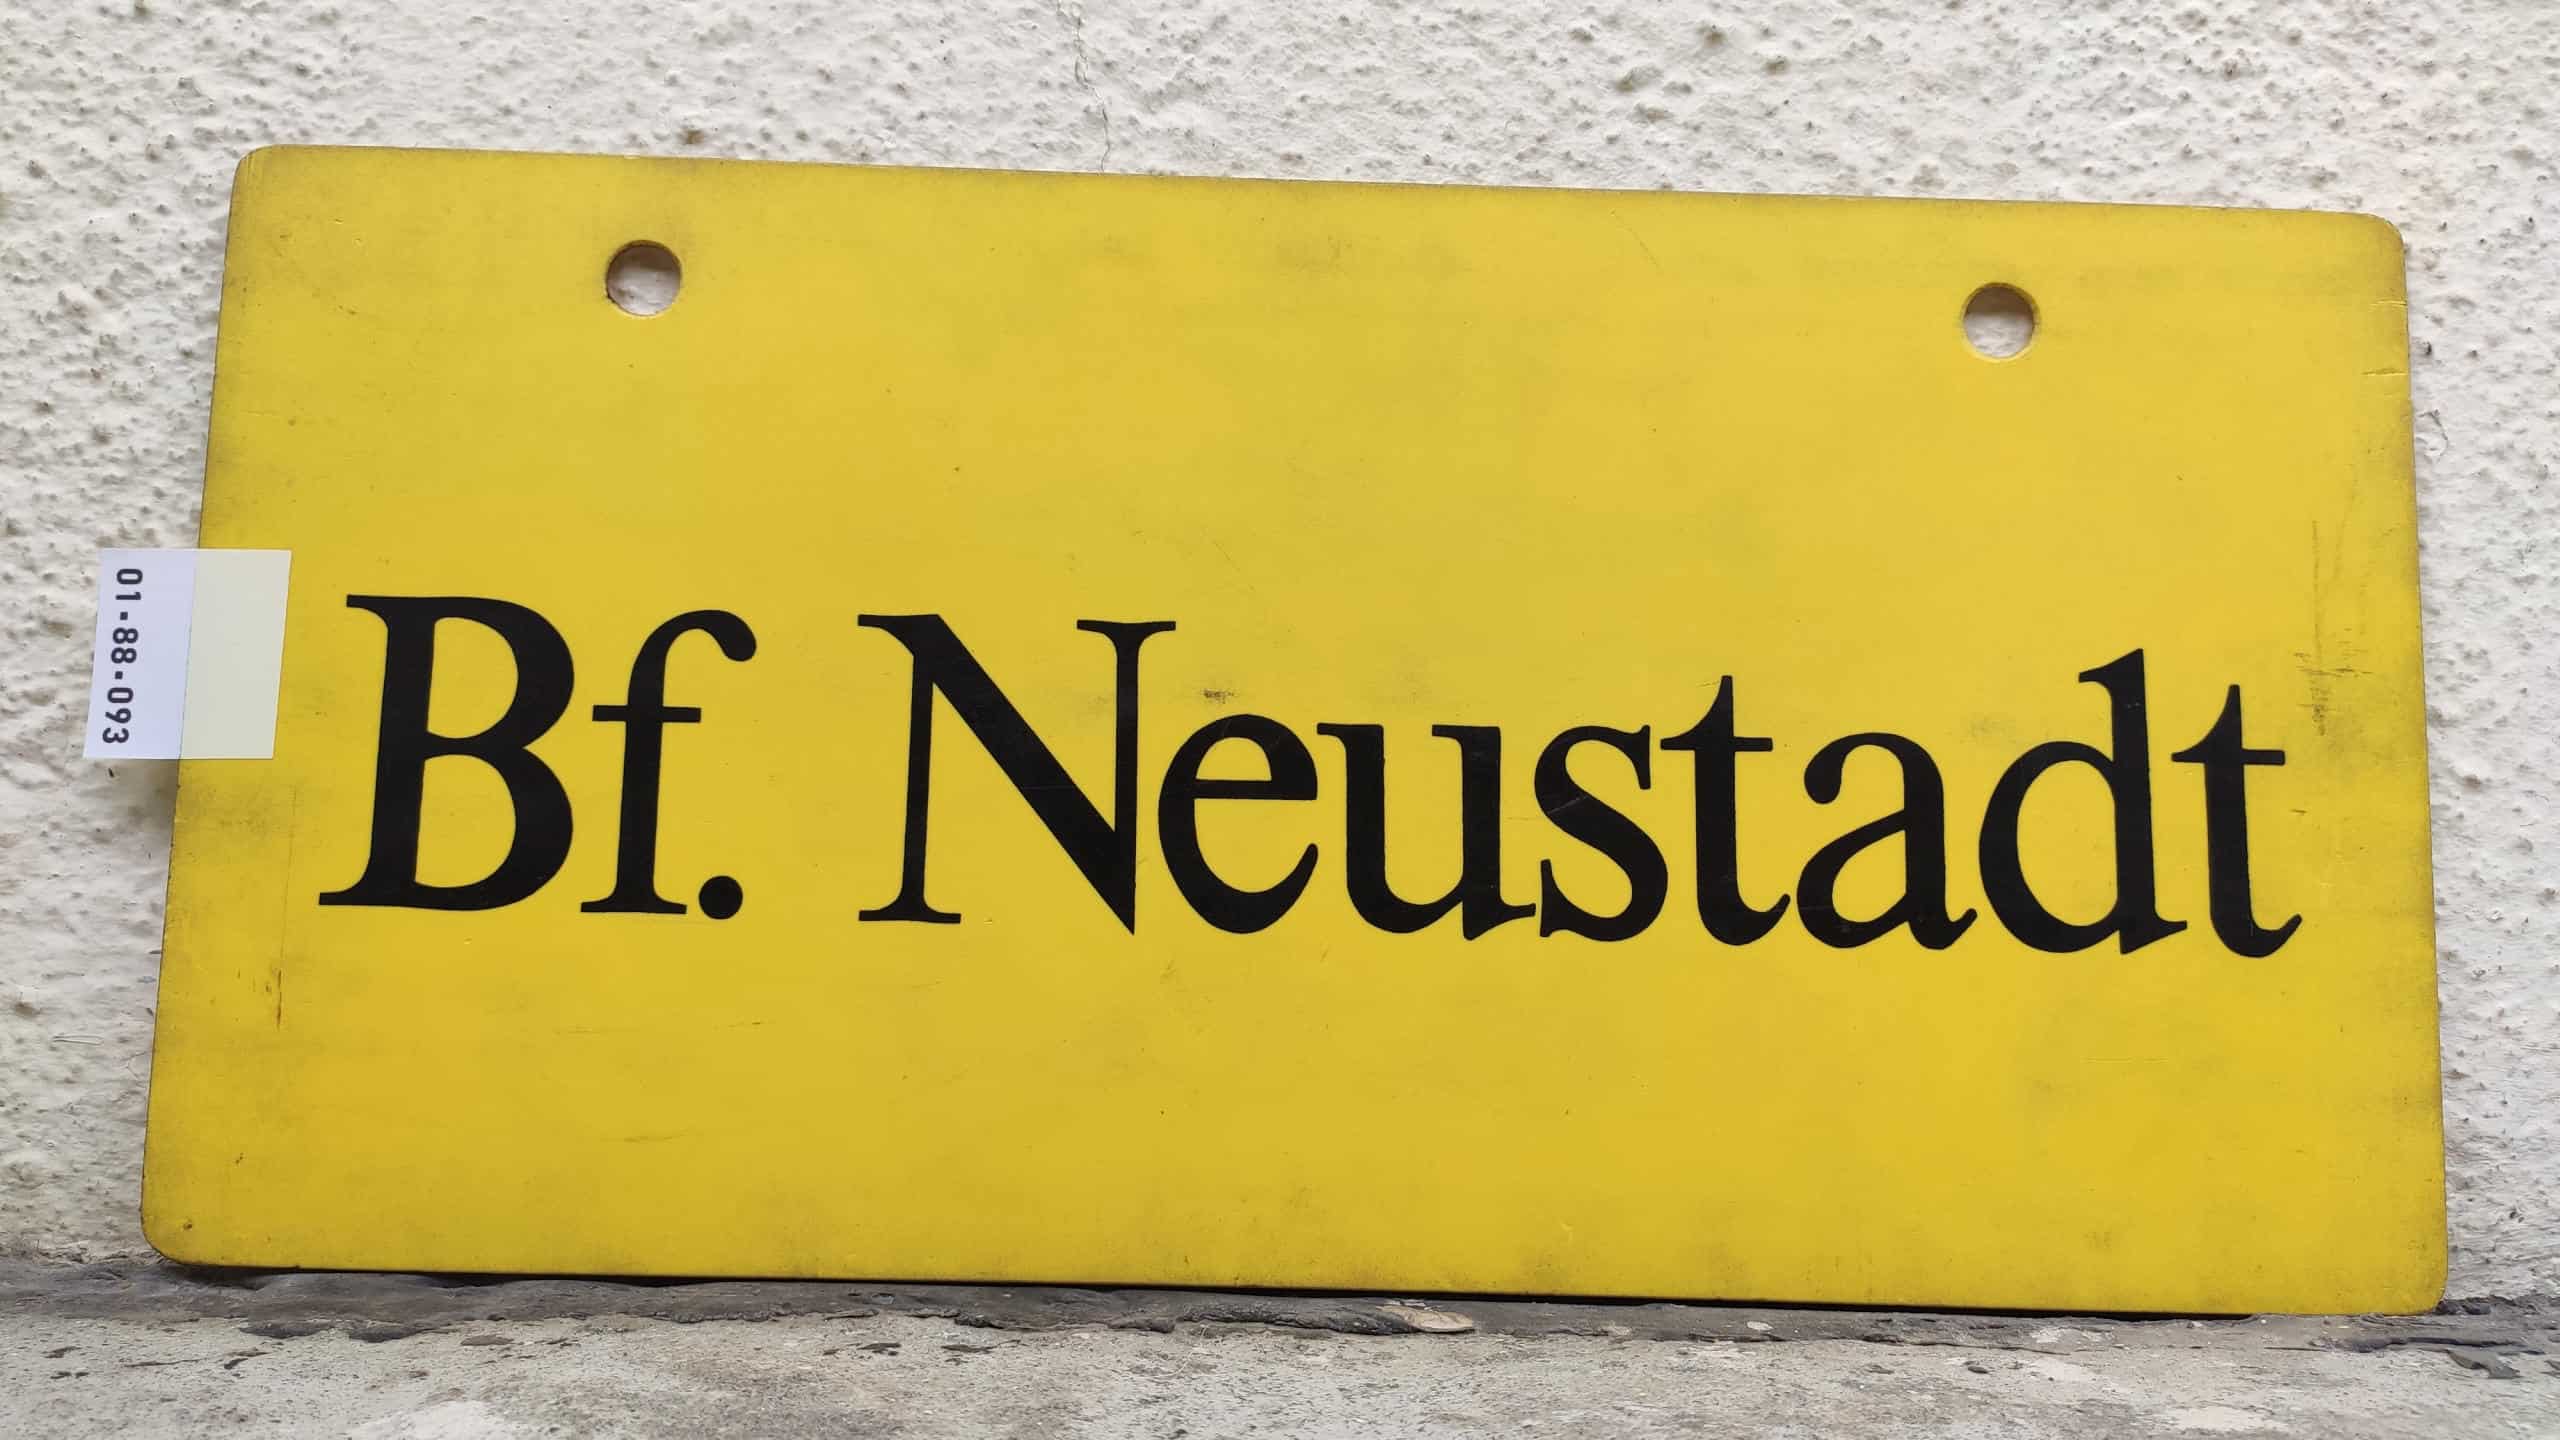 Bf. Neustadt